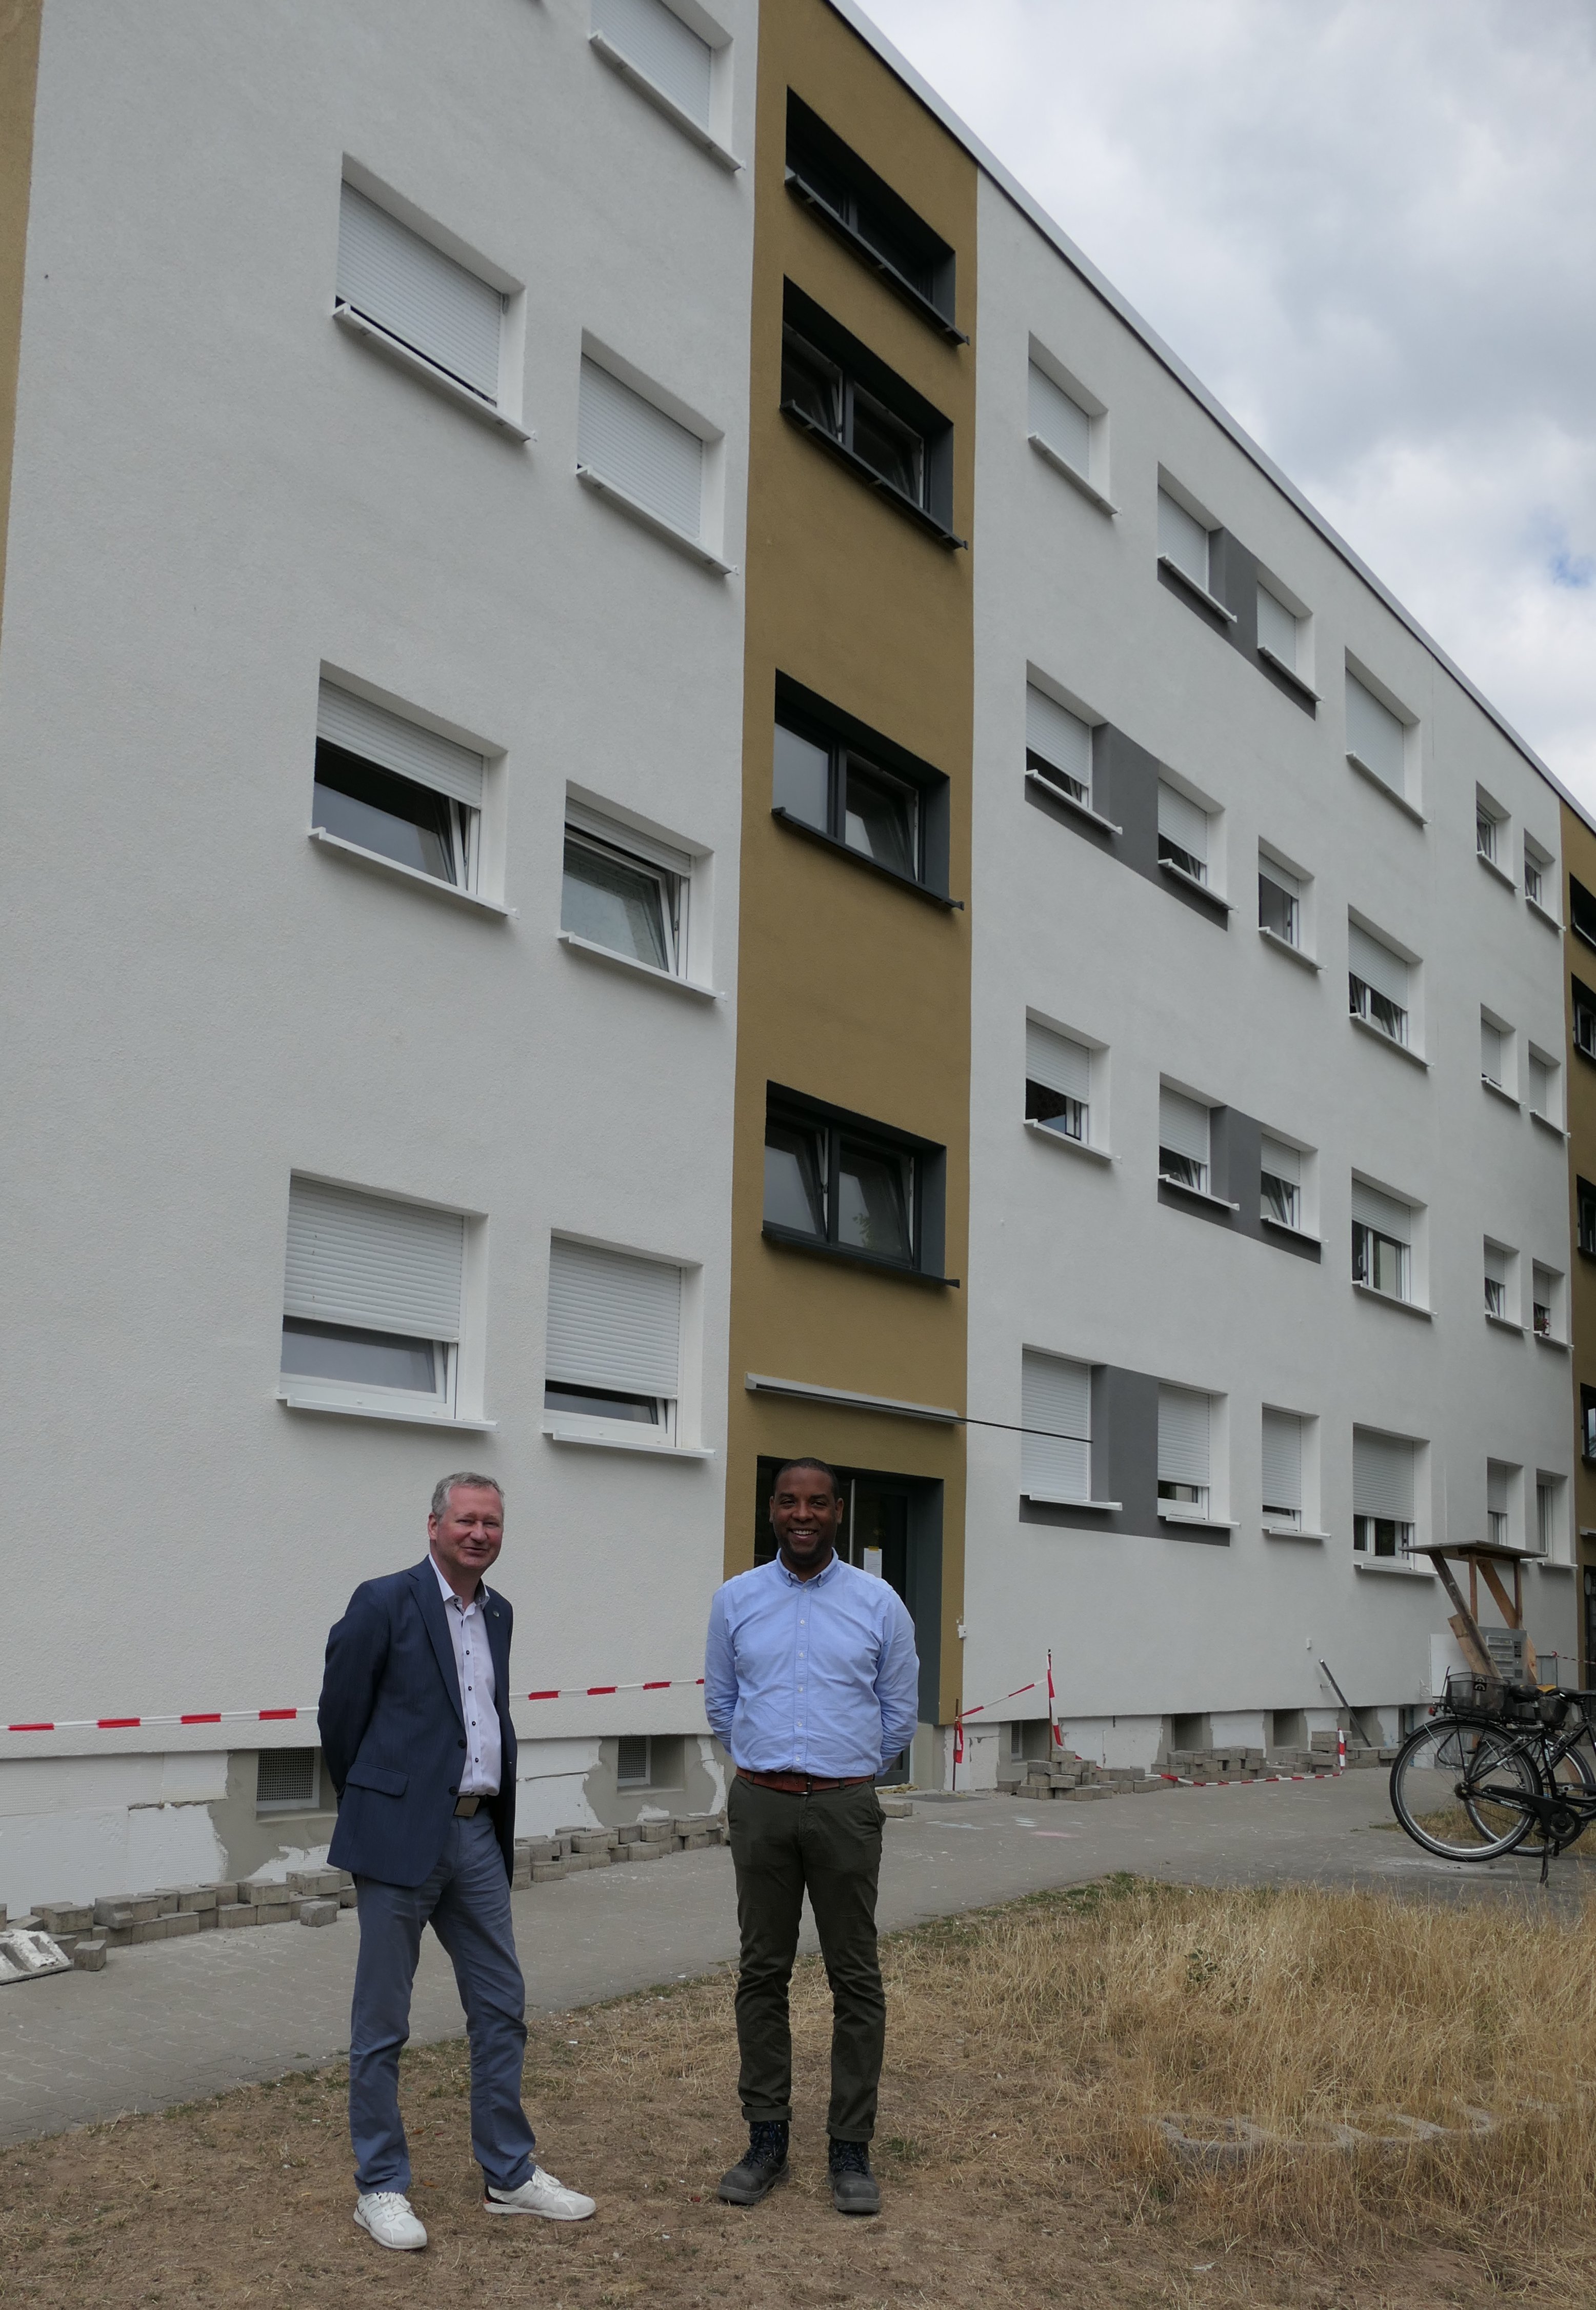 Geschäftsführer Torsten Regenstein nimmt mit Bauleiter Lian Moiba die Modernisierung der Wohnanlage in Augenschein